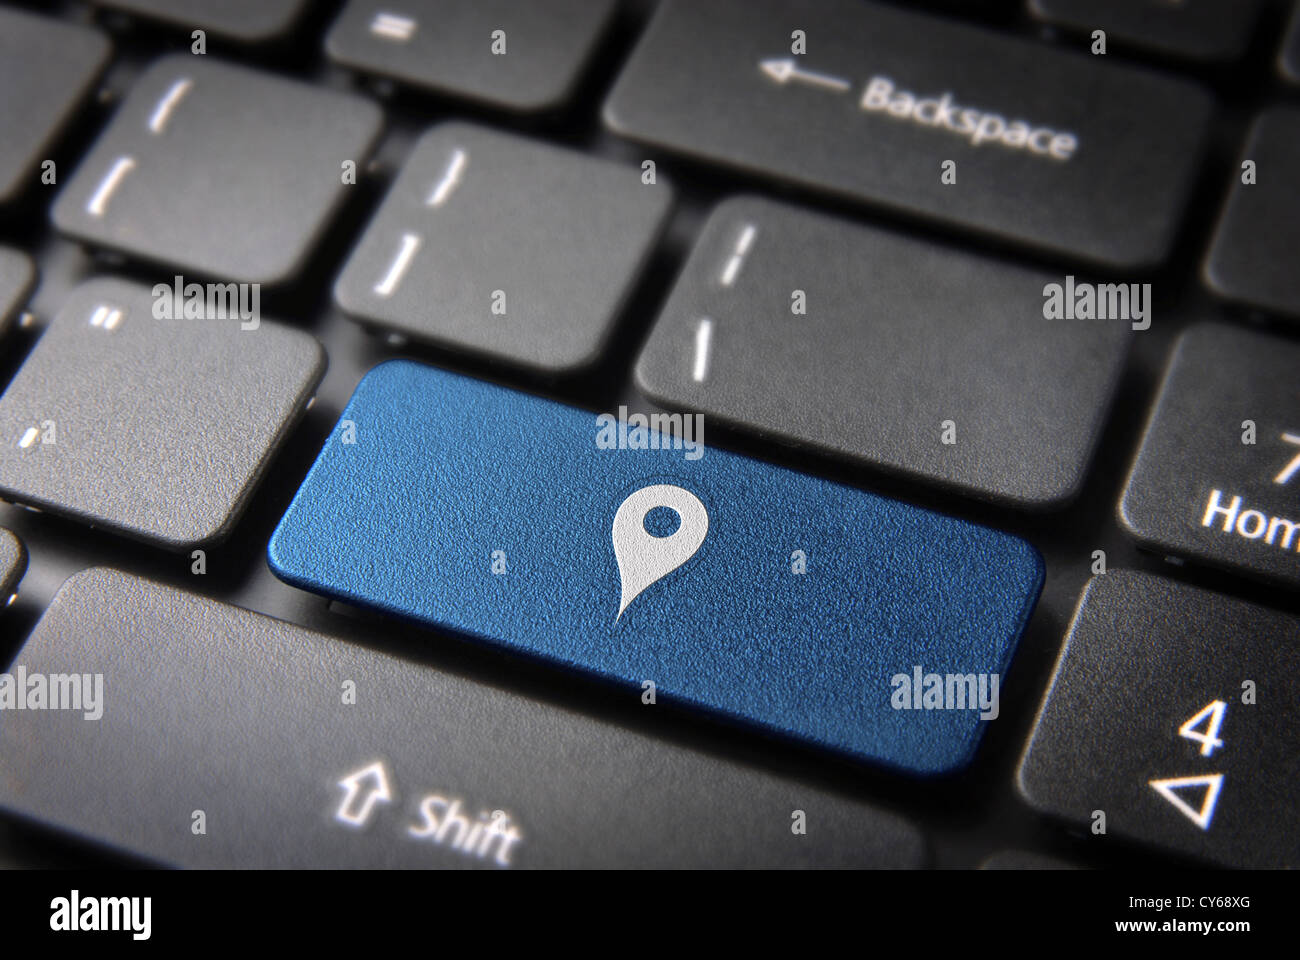 Blaue Taste mit Geo-Standort-Symbol auf Laptop-Tastatur. Im Preis inbegriffen Clipping-Pfad, so dass Sie leicht bearbeitet werden kann. Stockfoto